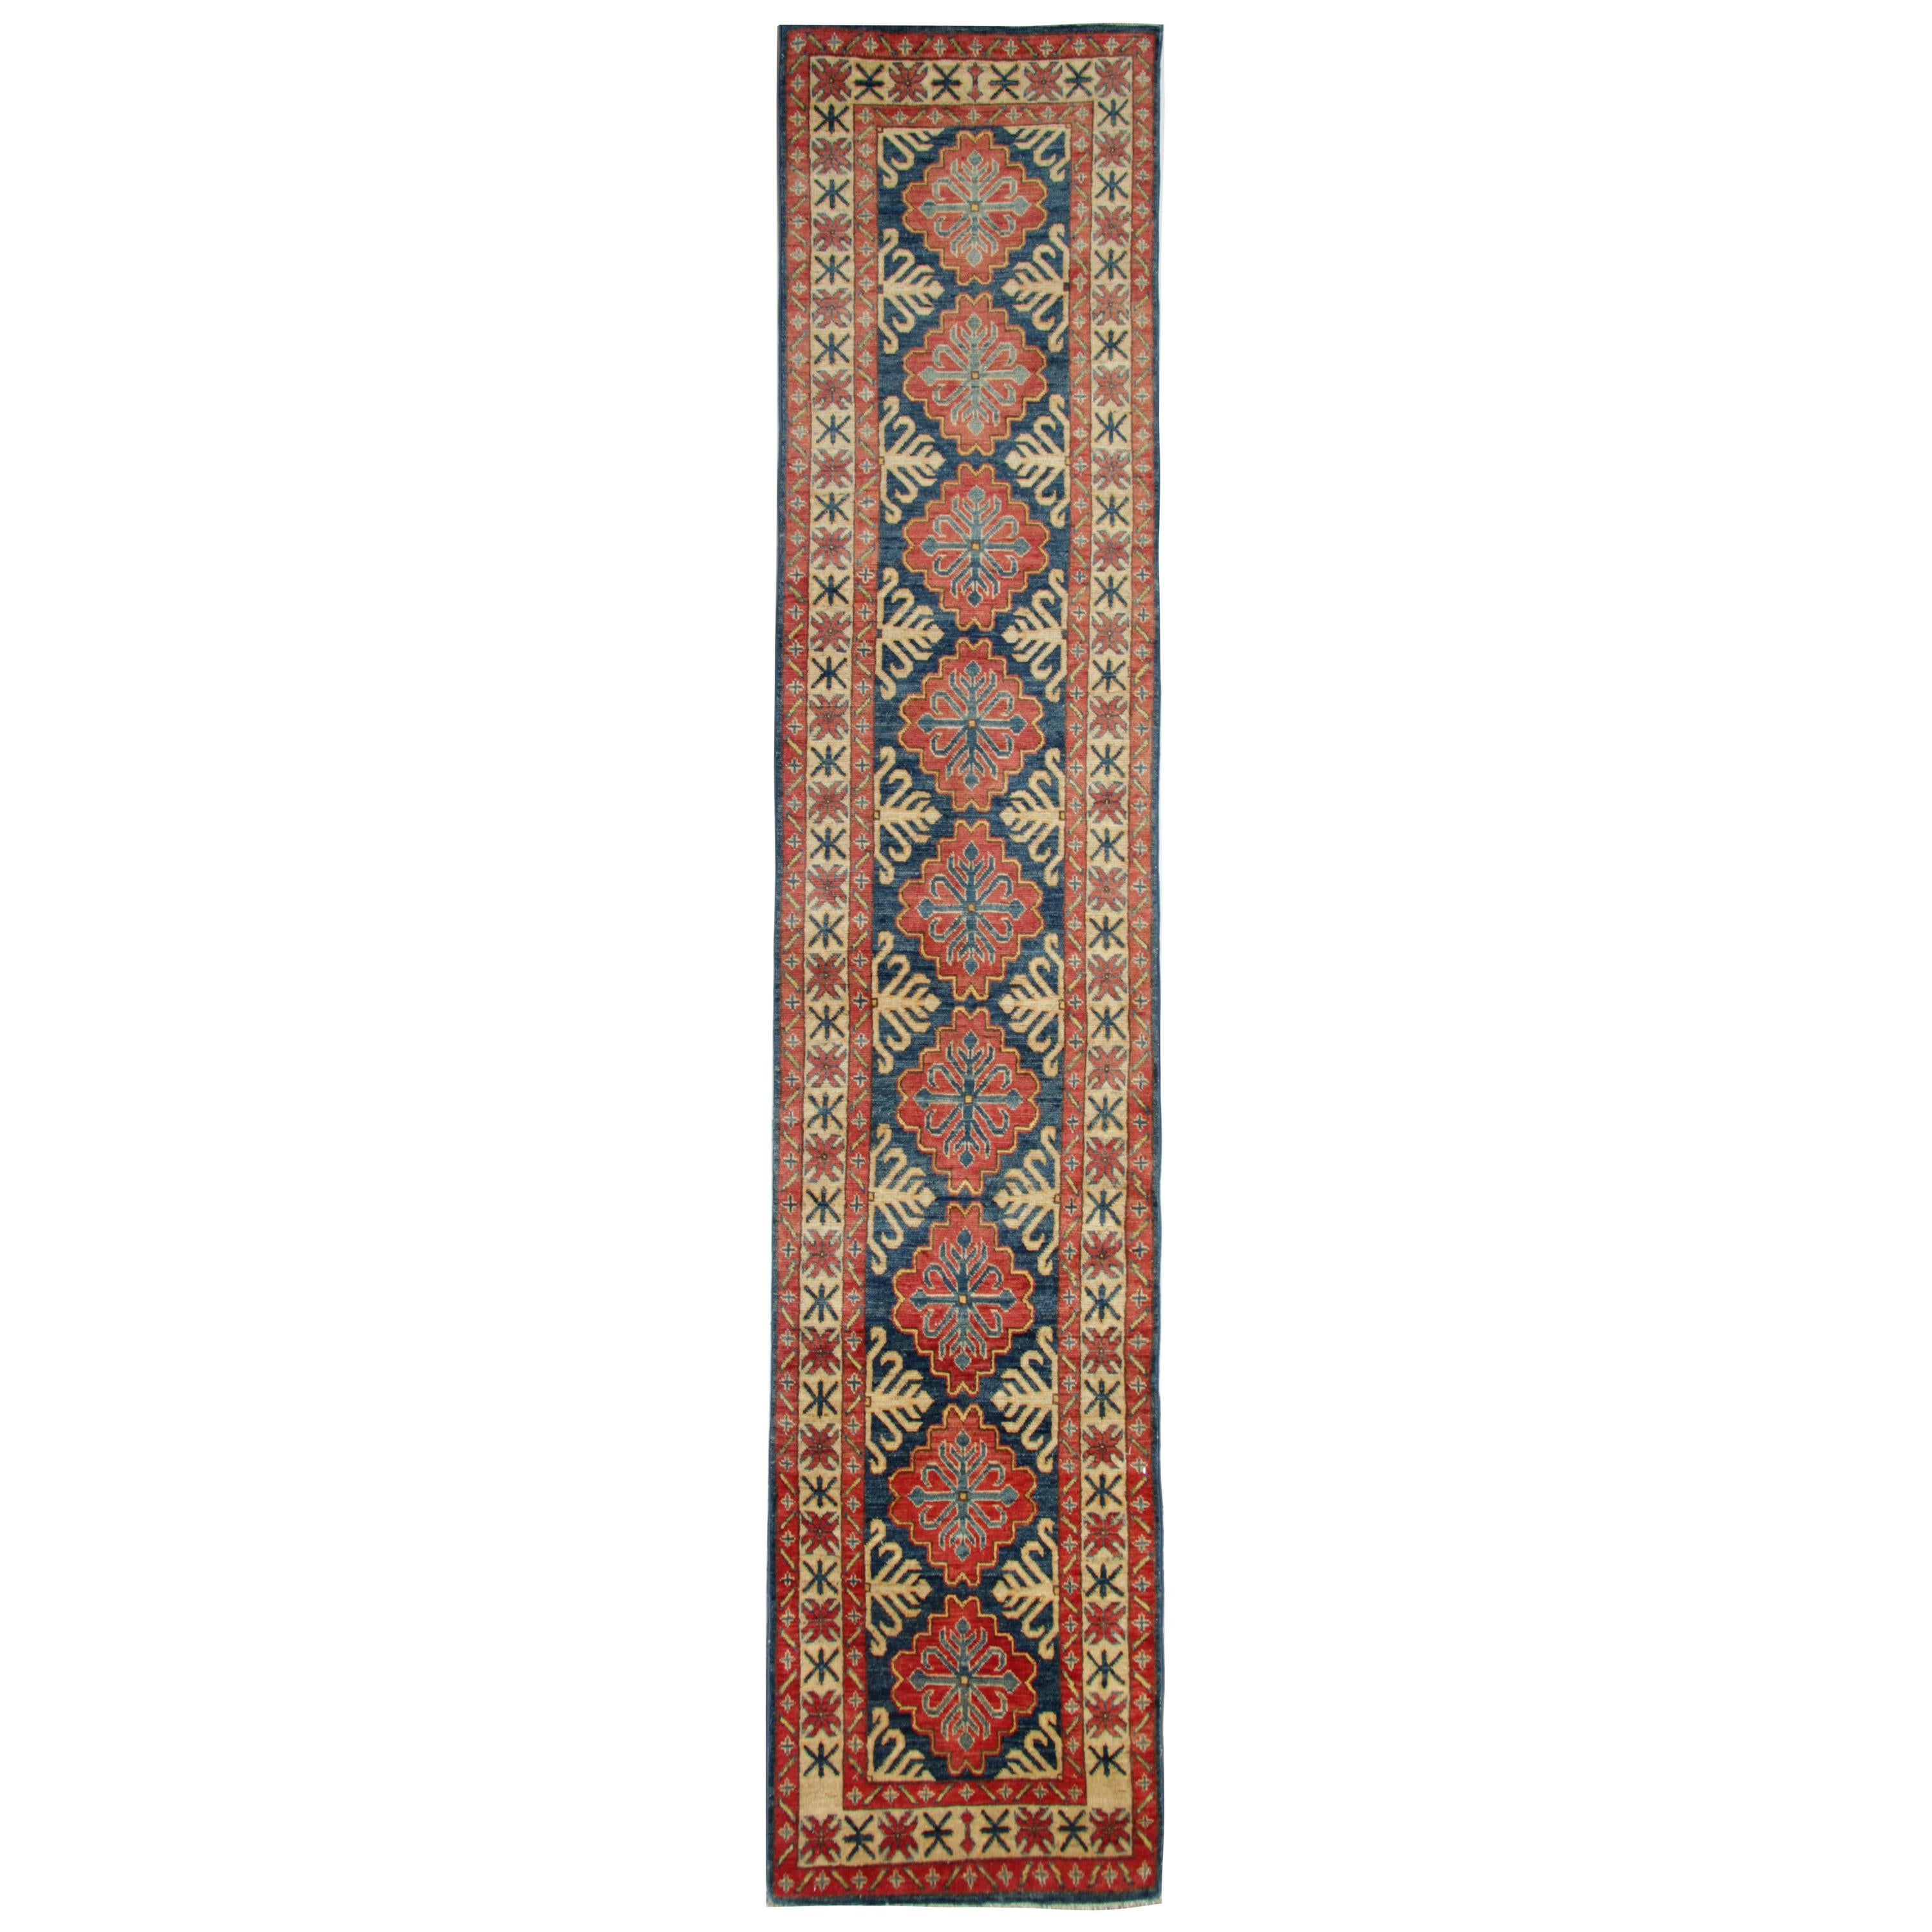 Handmade Runner Rug Blue and Red Medallion Rug Carpet Geometric Kazak Rug 